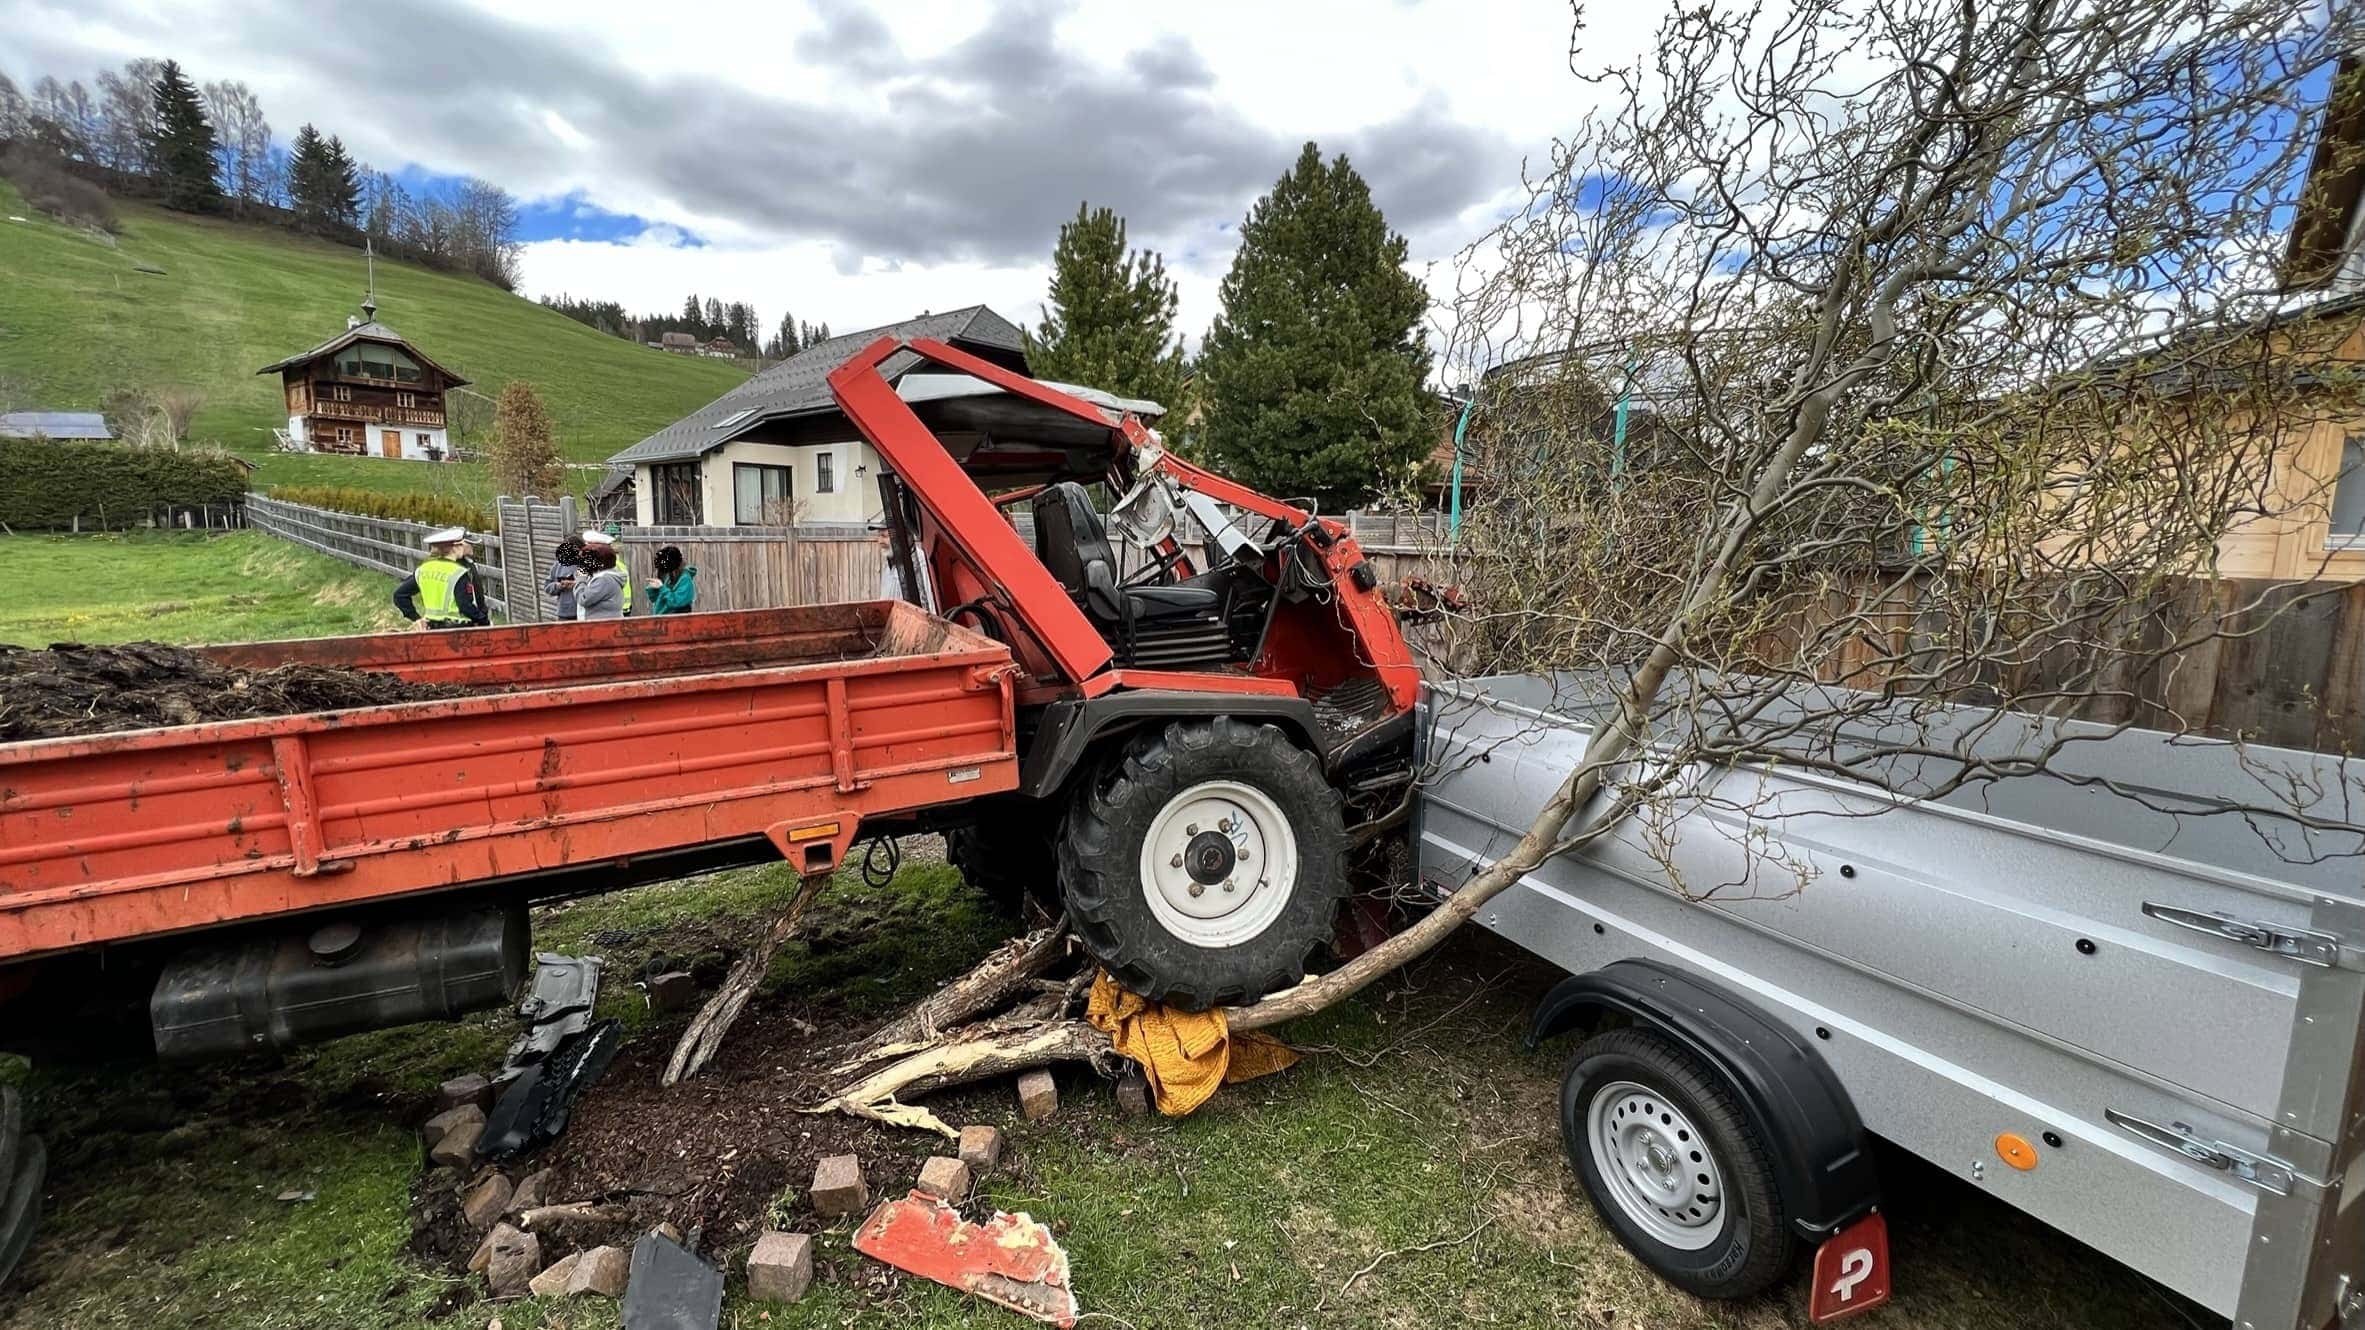 Absturz eines Mulis (Traktor) – Feuerwehr Tamsweg im Einsatz